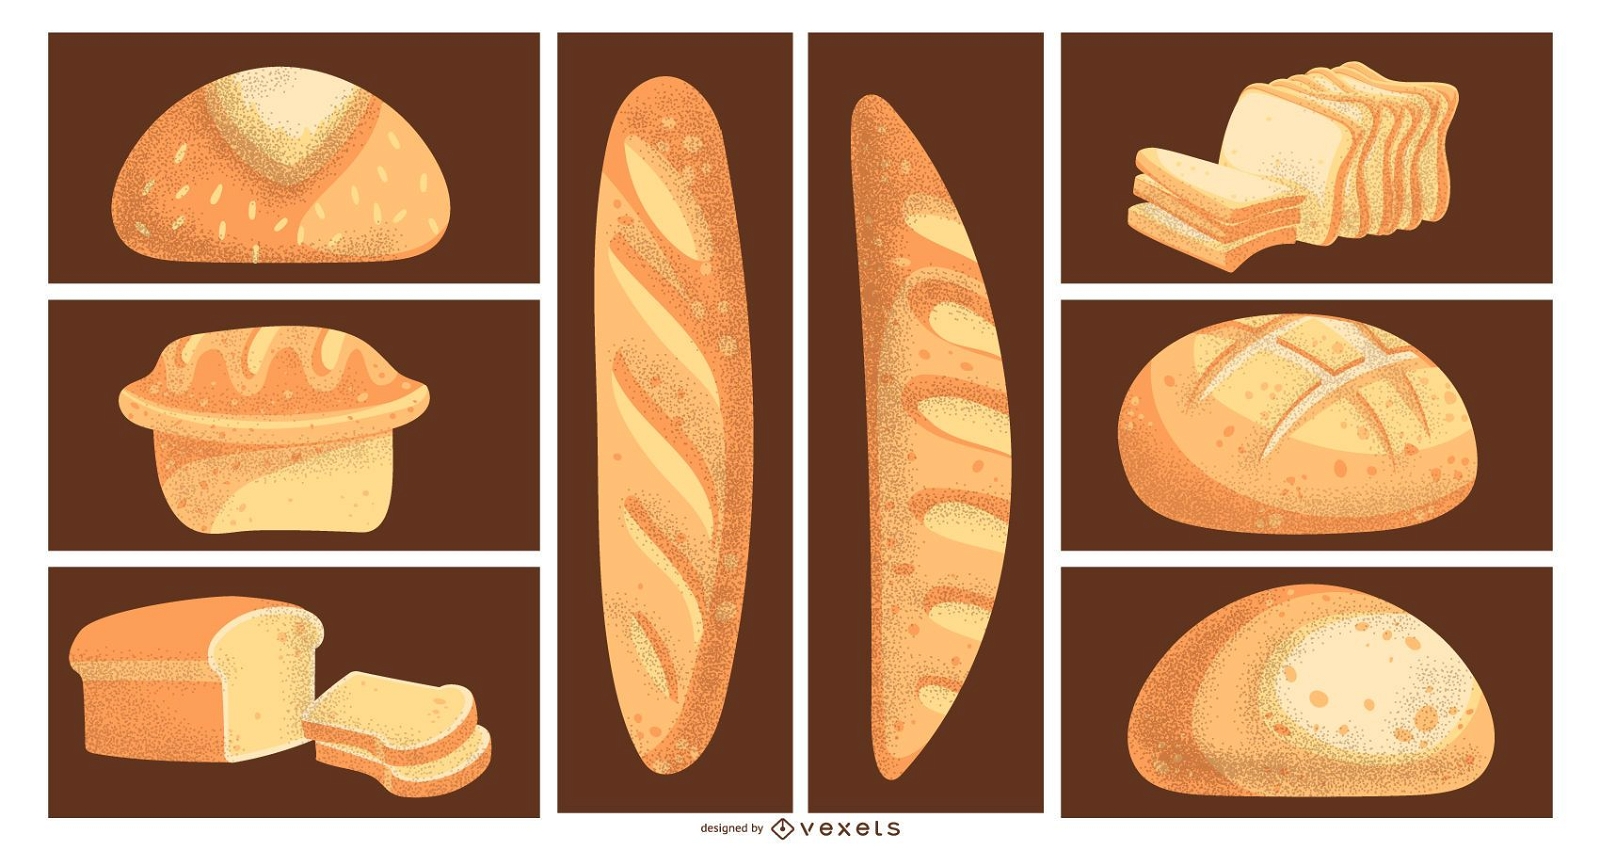 Bread illustrations set